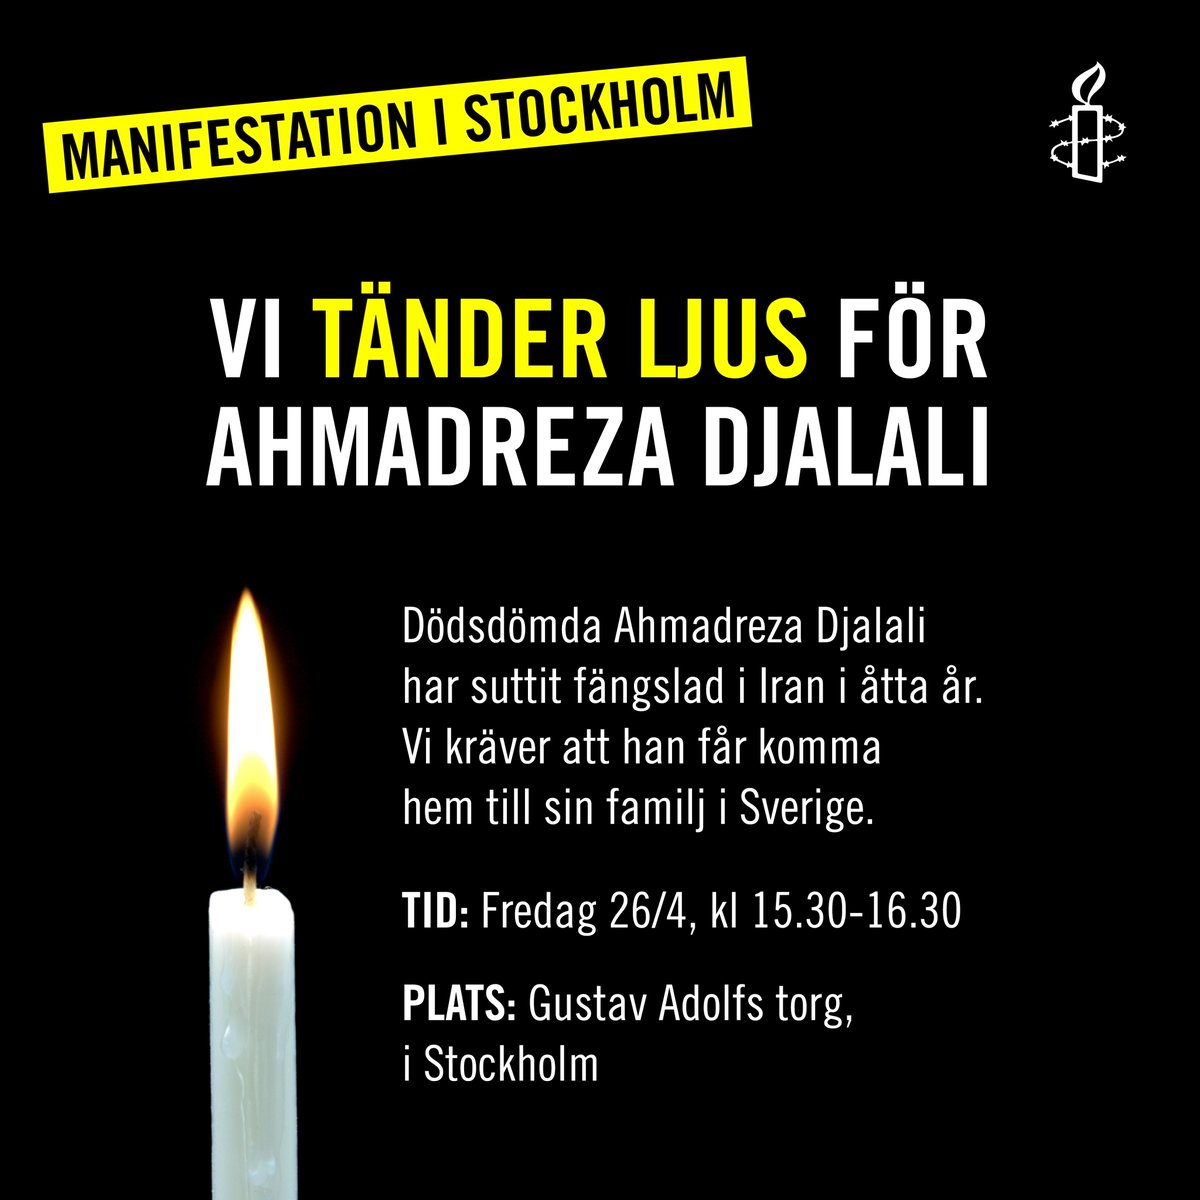 @TobiasBillstrom MANIFESTATION FÖR AHMADREZA DJALALI!
Svensk-iranske läkaren #AhmadrezaDjalali har frihetsberövats i #Iran i 8 år, dömd till döden.
Var med oss och tänd ett ljus & kräv att han friges o får återvända till sin familj!  
Tid: Fredag 16/4, kl 15.30-16.30
Plats: Utanför UD i Stockholm